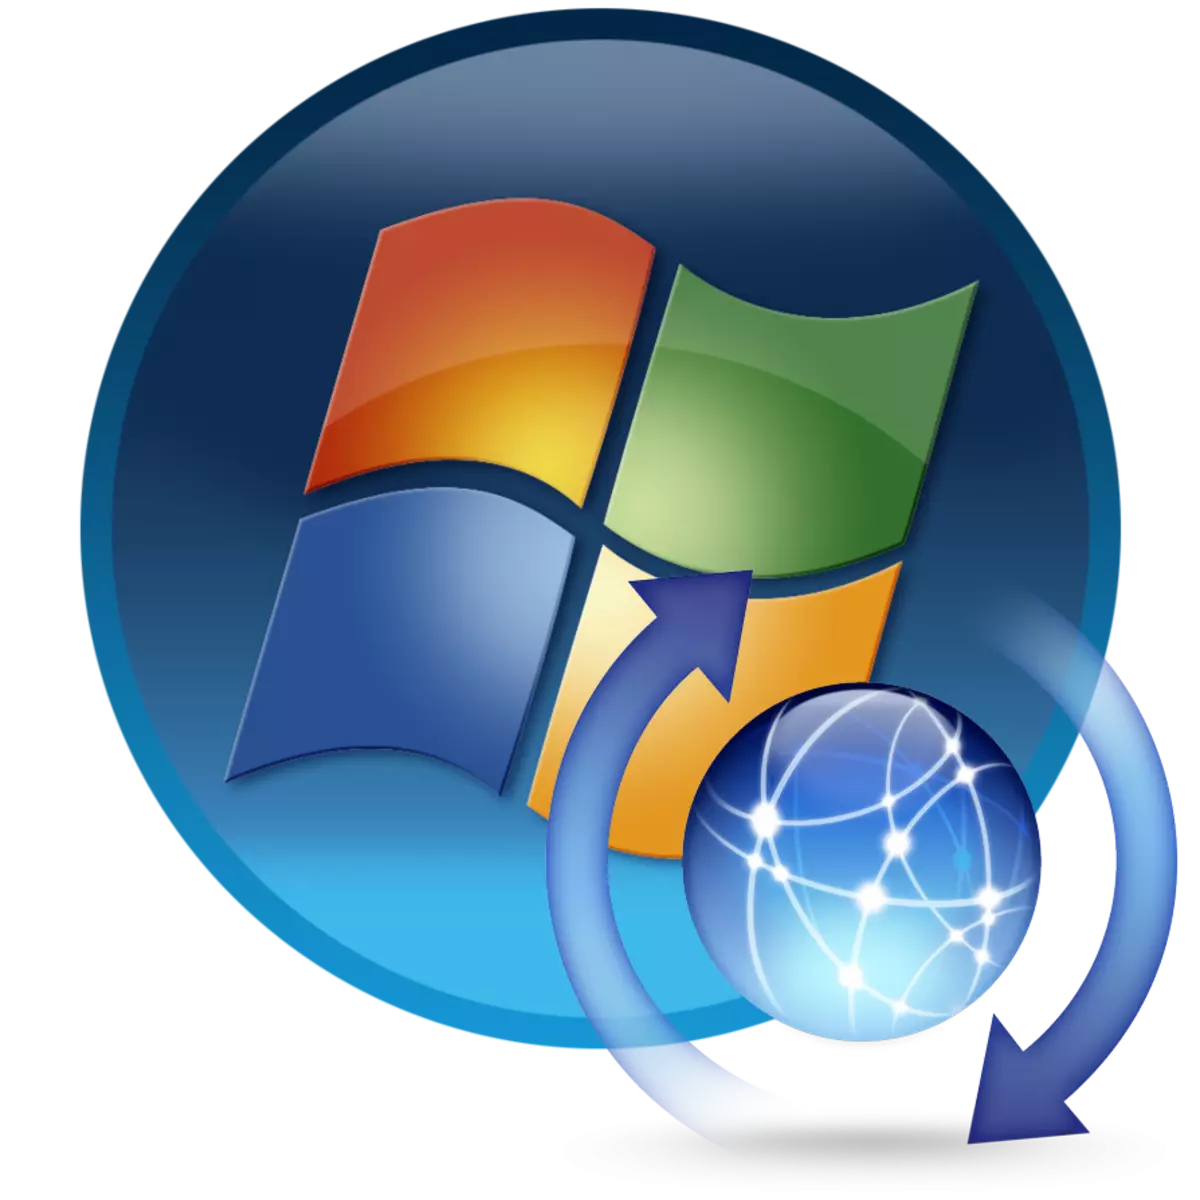 Installige Windows 7 arvutisse Windows 7 arvutis 7